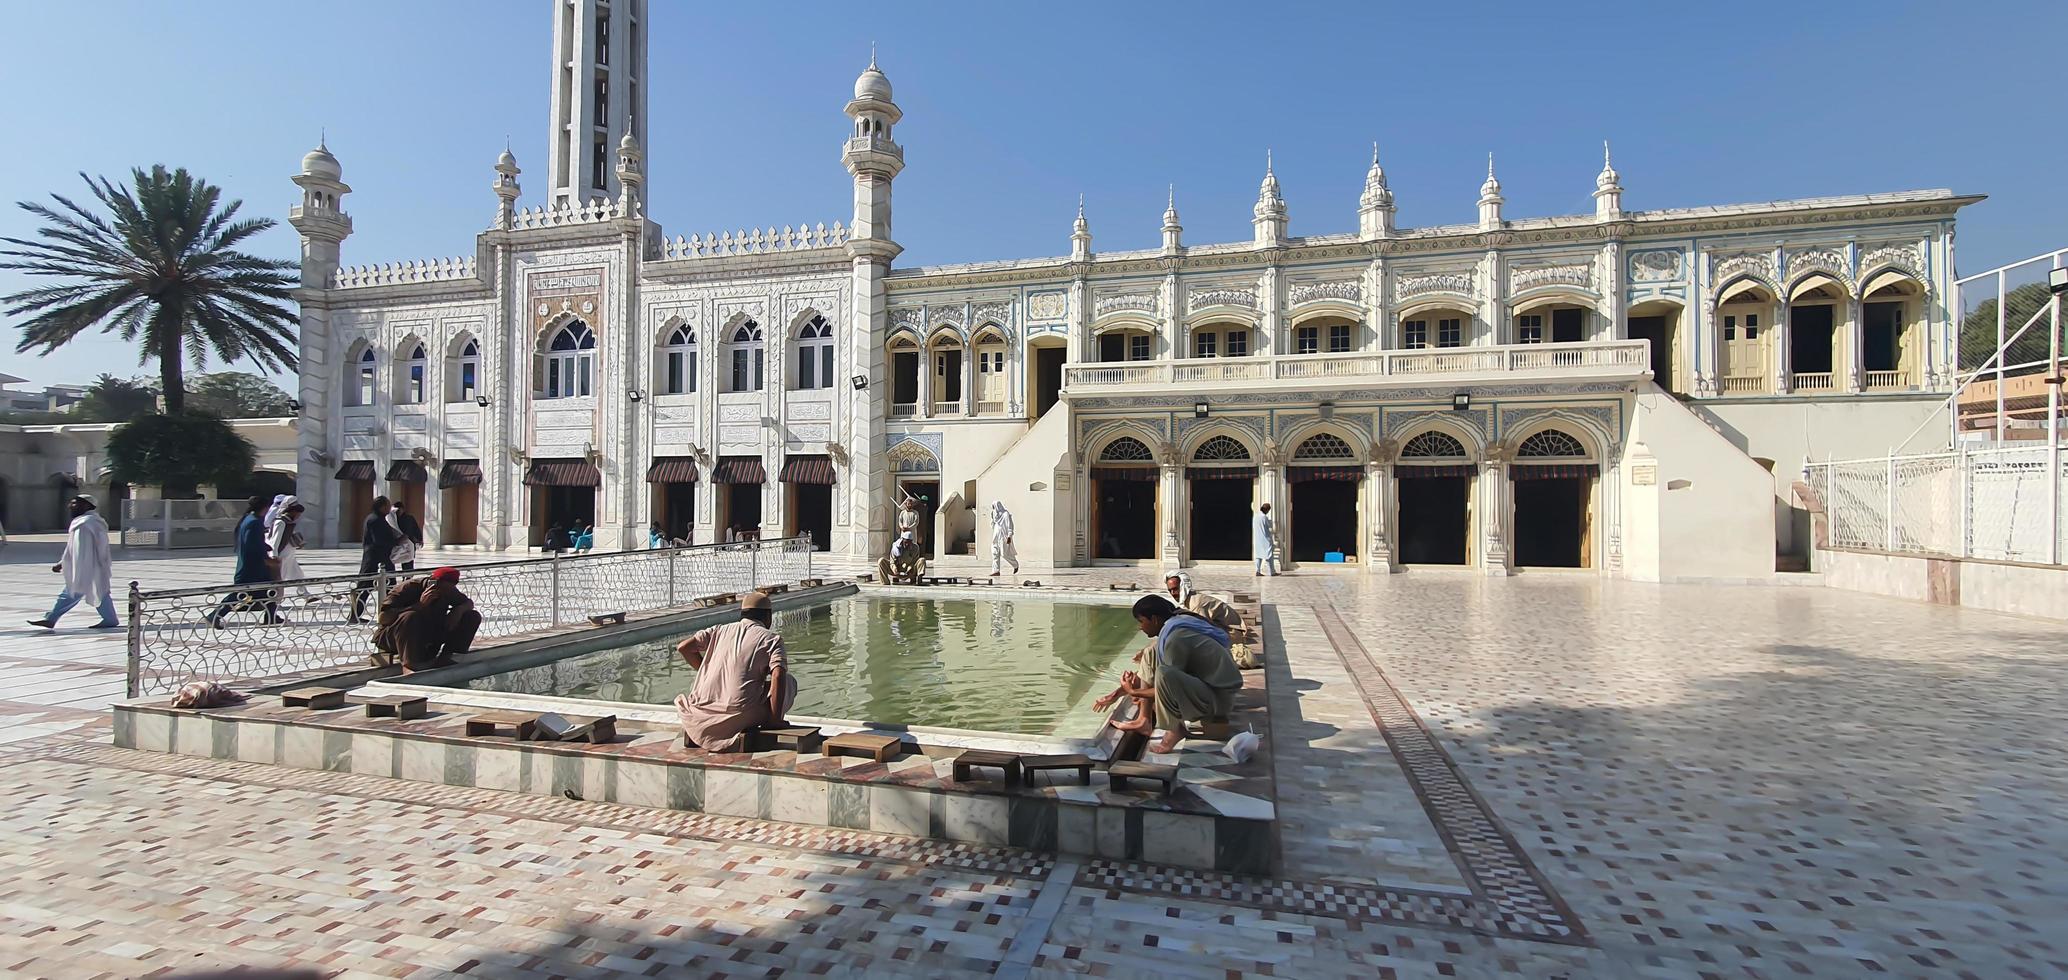 islamabad, punjab, pakistán - 2021, jama masjid golra sharif mezquita pintoresca vista impresionante con visitantes musulmanes lavándose los pies y las manos en un día soleado foto